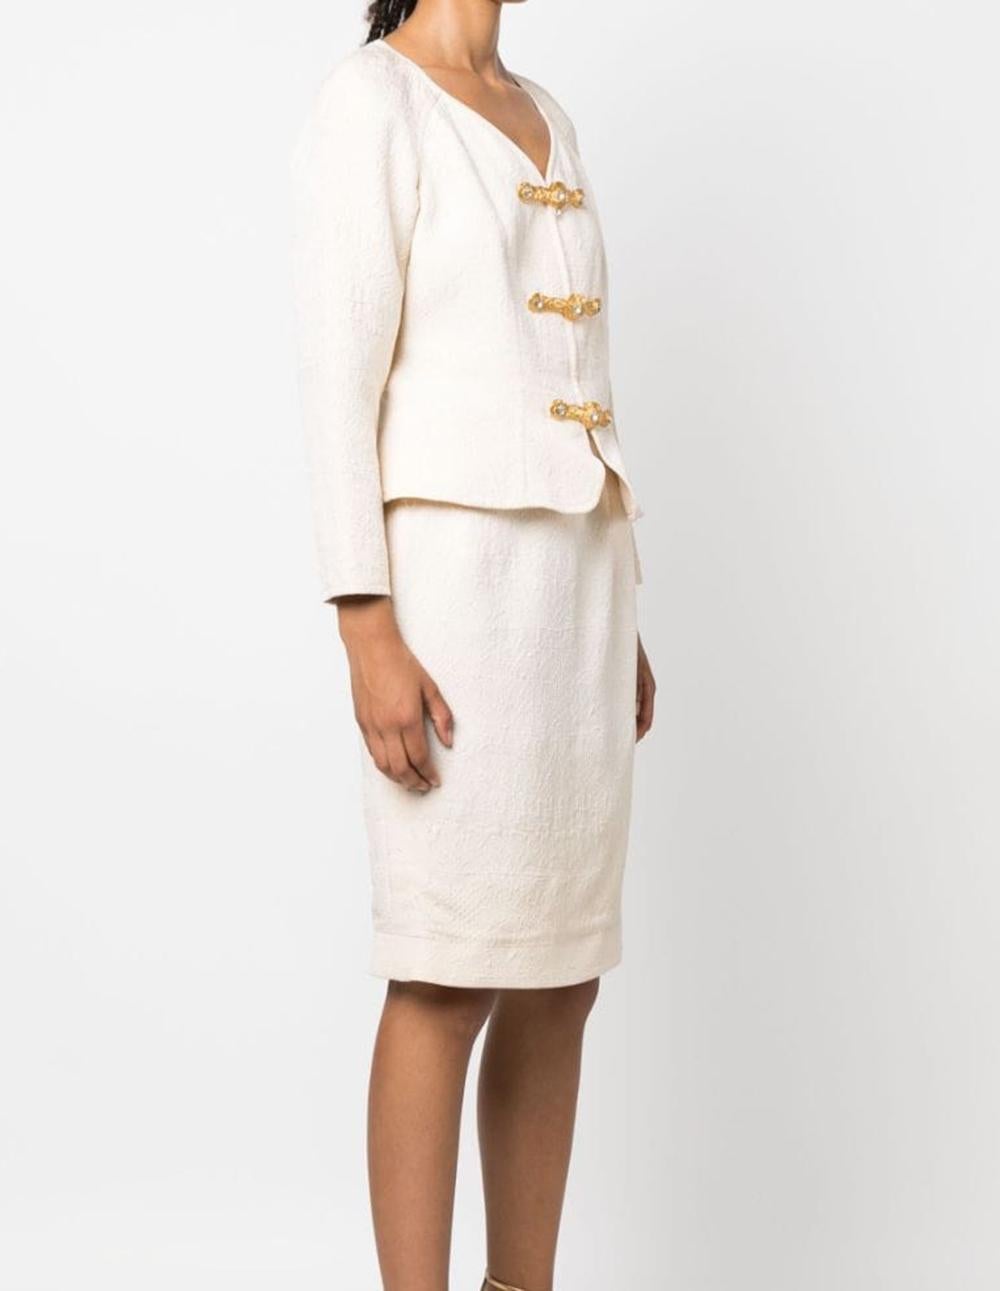 Women's Christian Lacroix Cream Jacquard Skirt Suit For Sale